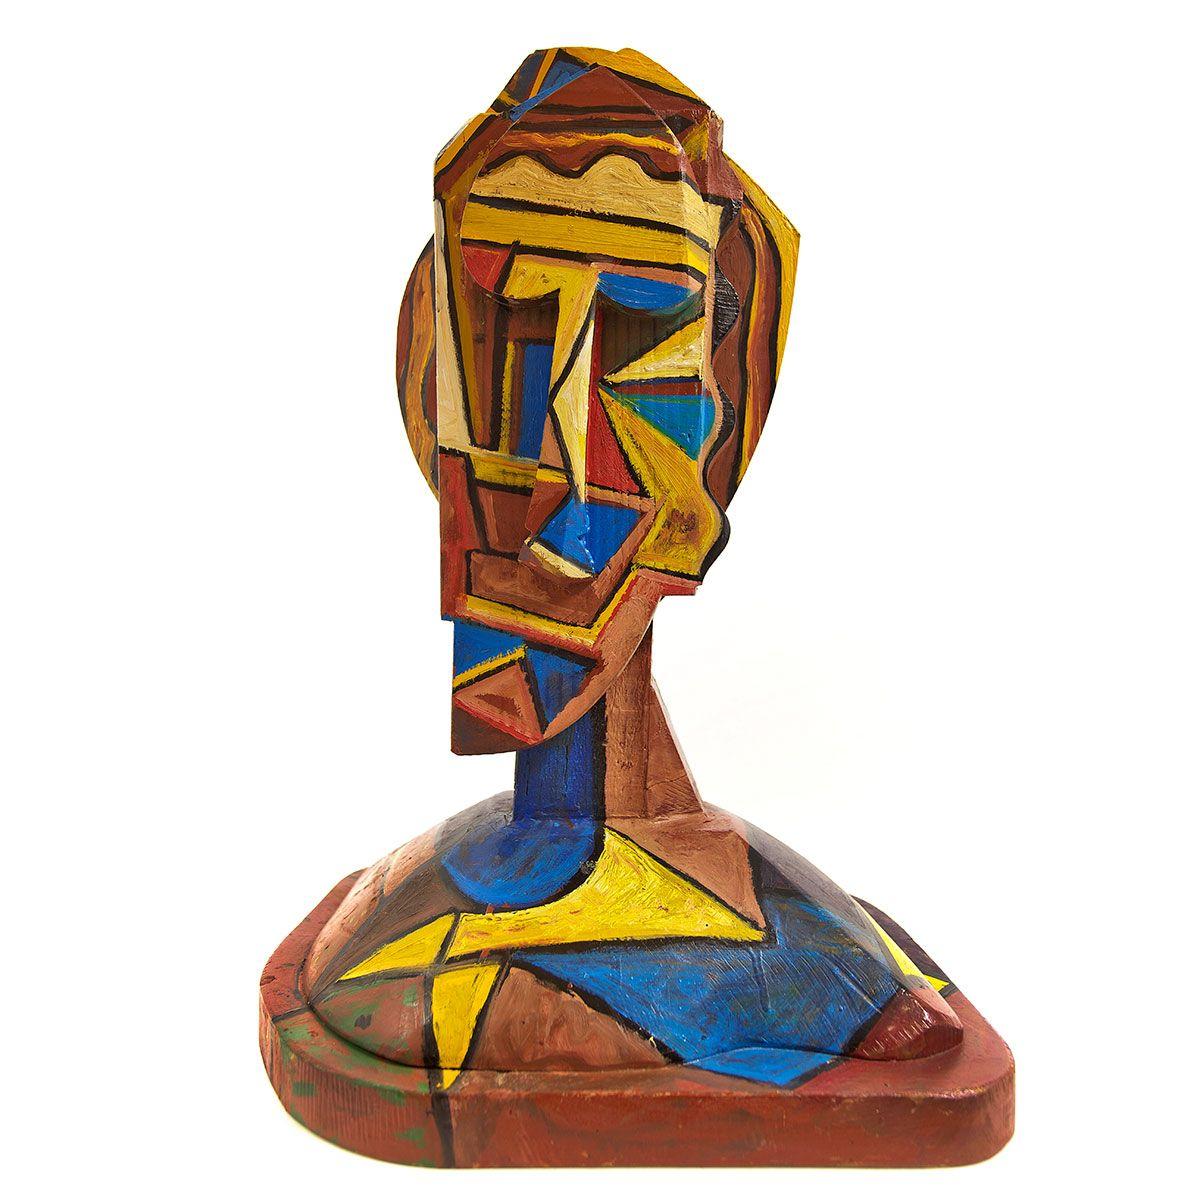 Abstract Sculpture Italo Scanga - Tête de sculpture en bois peint, géométrique abstraite et cubiste, art néo- figuratif italien